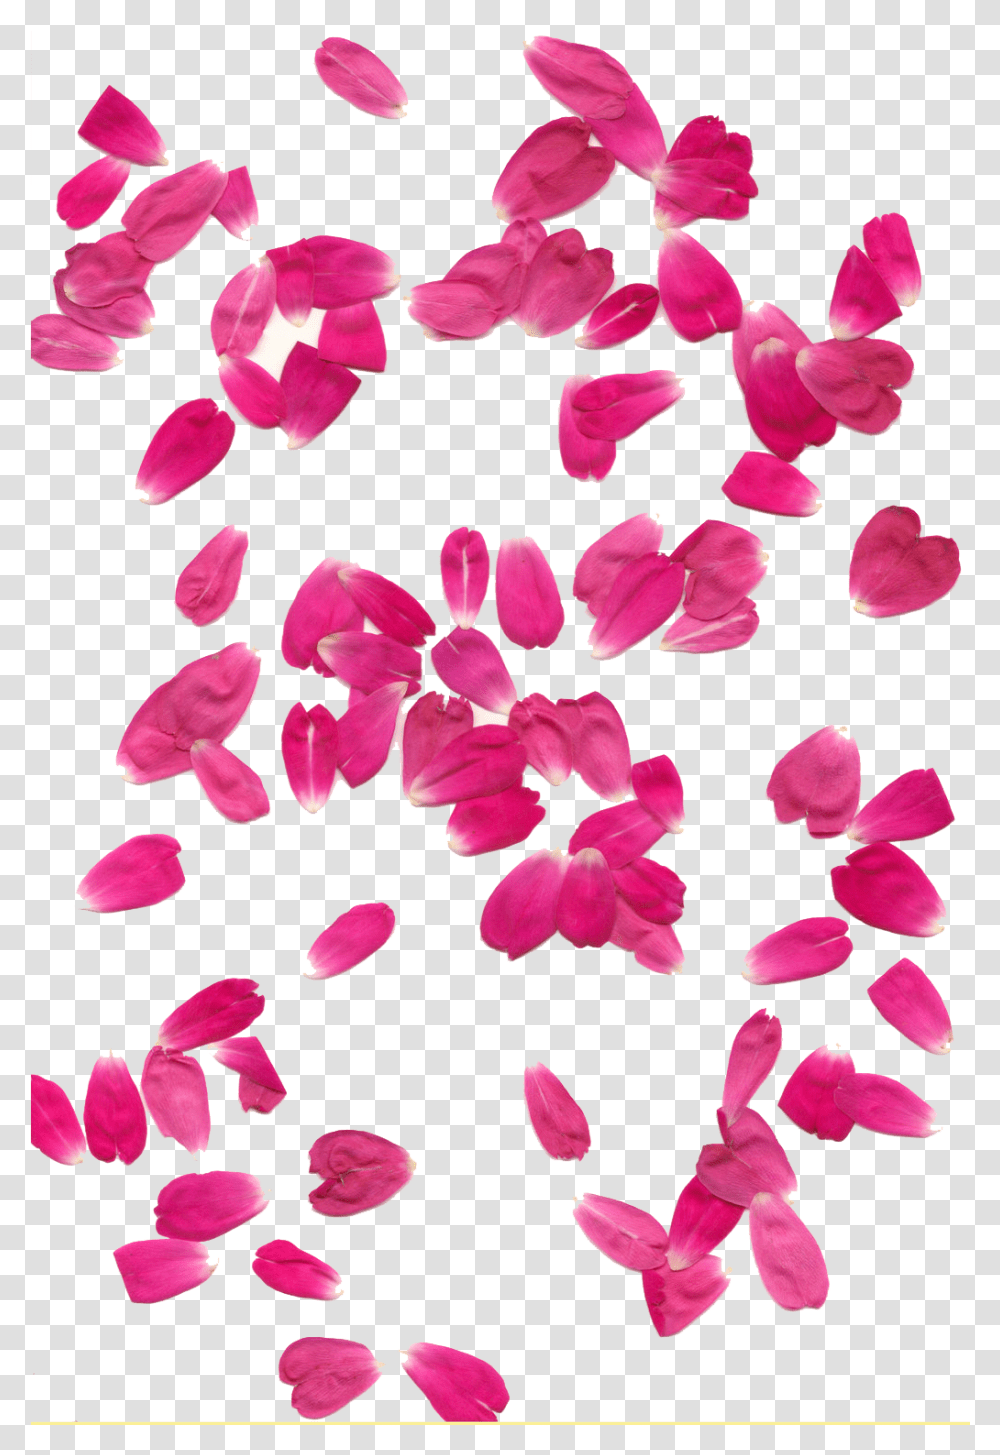 Background Hq Image Background Pink Flower Petals, Plant, Blossom Transparent Png